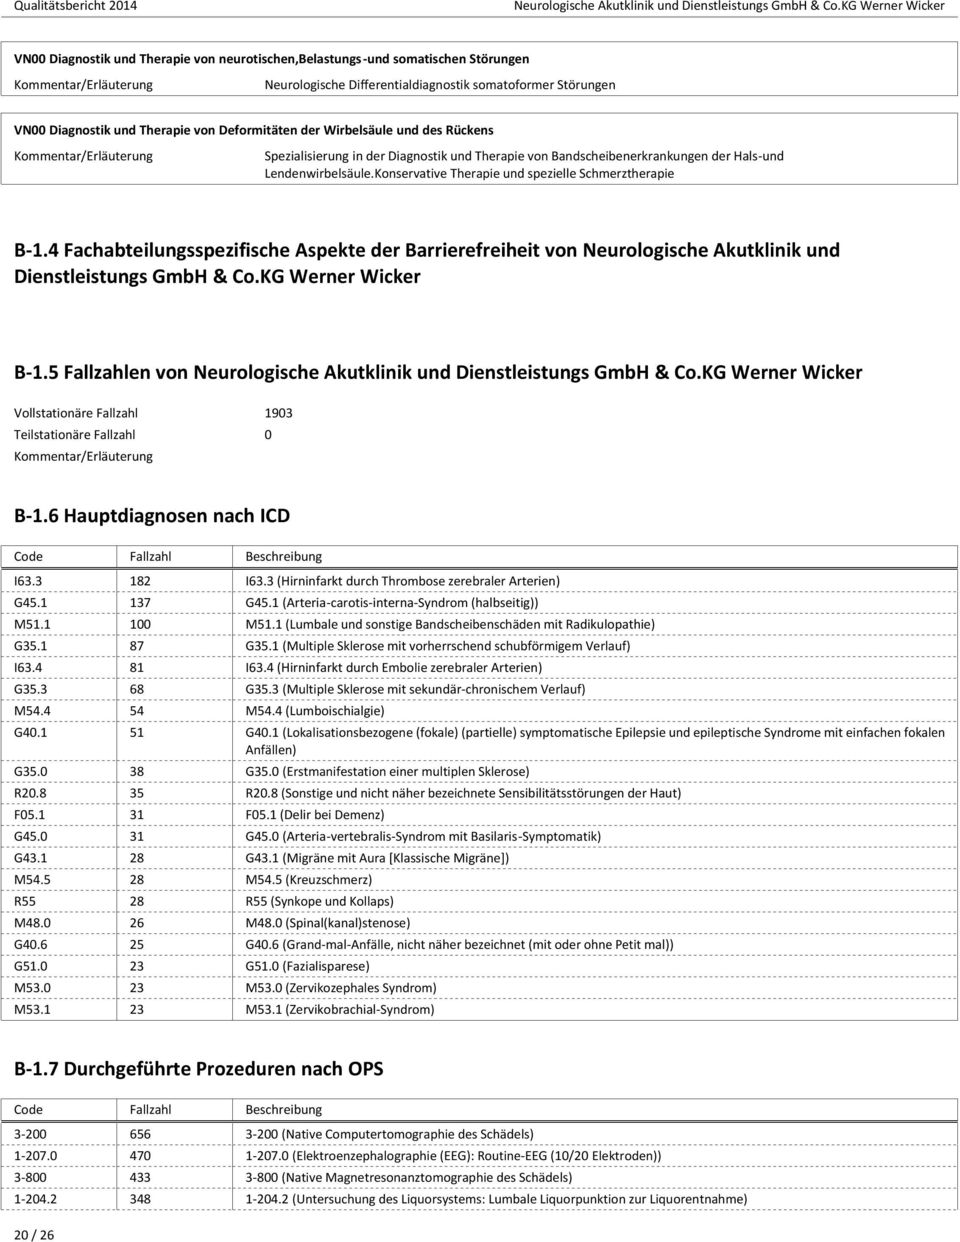 4 Fachabteilungsspezifische Aspekte der Barrierefreiheit von Neurologische Akutklinik und Dienstleistungs GmbH & Co.KG Werner Wicker B-1.